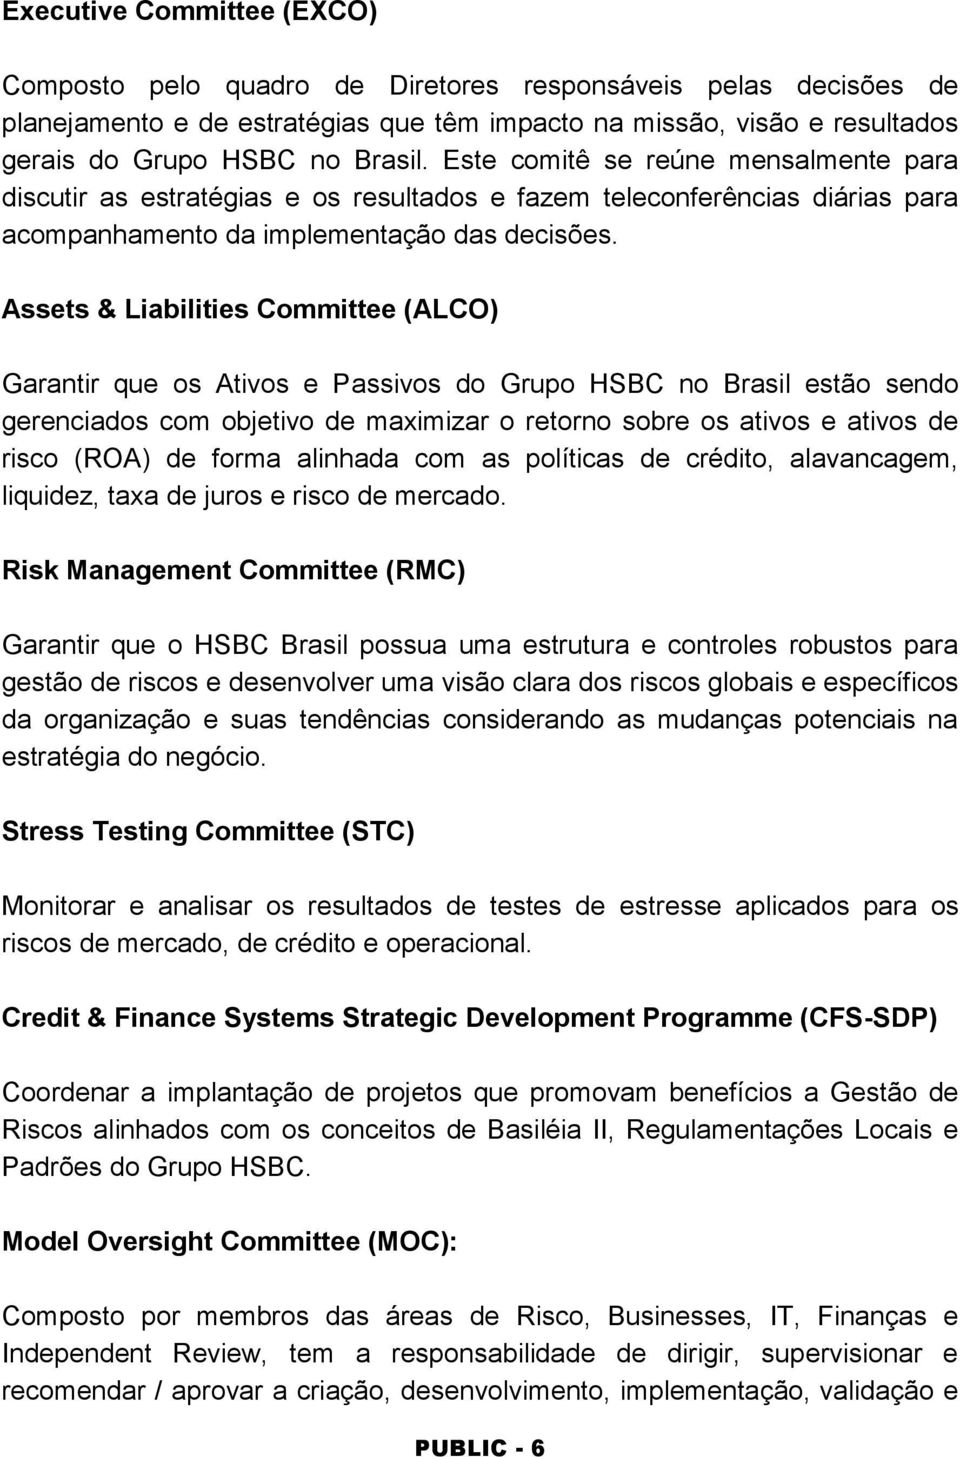 Assets & Liabilities Committee (ALCO) Garantir que os Ativos e Passivos do Grupo HSBC no Brasil estão sendo gerenciados com objetivo de maximizar o retorno sobre os ativos e ativos de risco (ROA) de